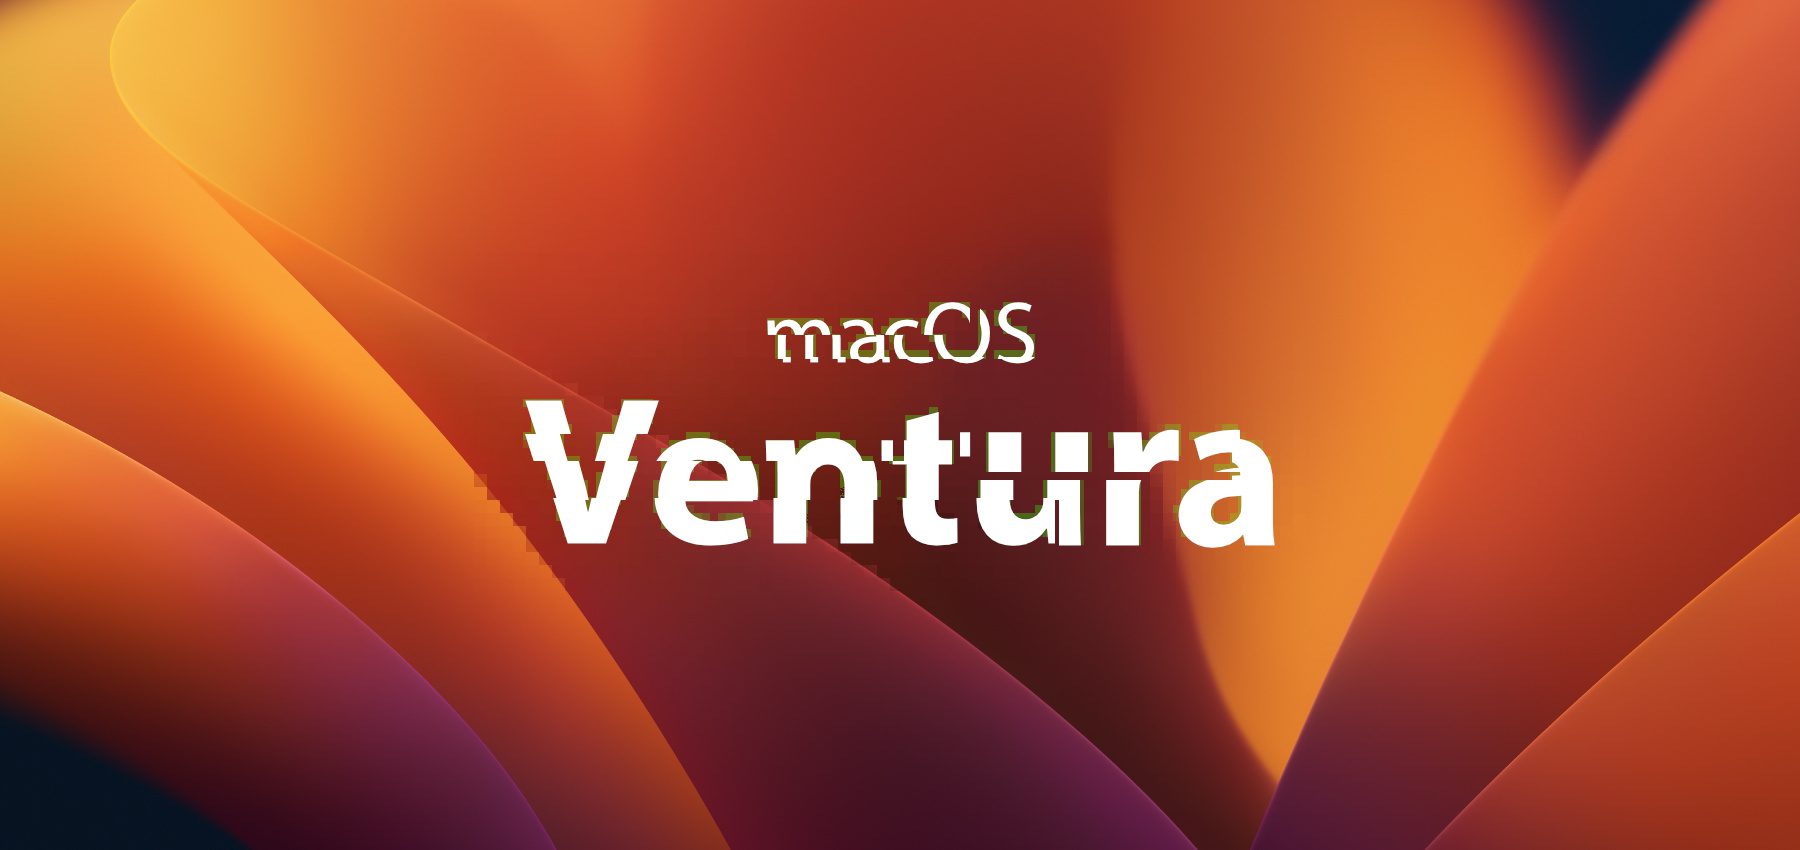 Die ersten macOS Ventura Probleme nach dem Upgrade des Apple Mac auf macOS 13 findet ihr hier. Es gibt für einige der häufigen Fehler auch schon Lösungen bzw. Lösungsansätze. Schreibt uns gern den von euch entdeckten Bug des Betriebssystem-Upgrades.